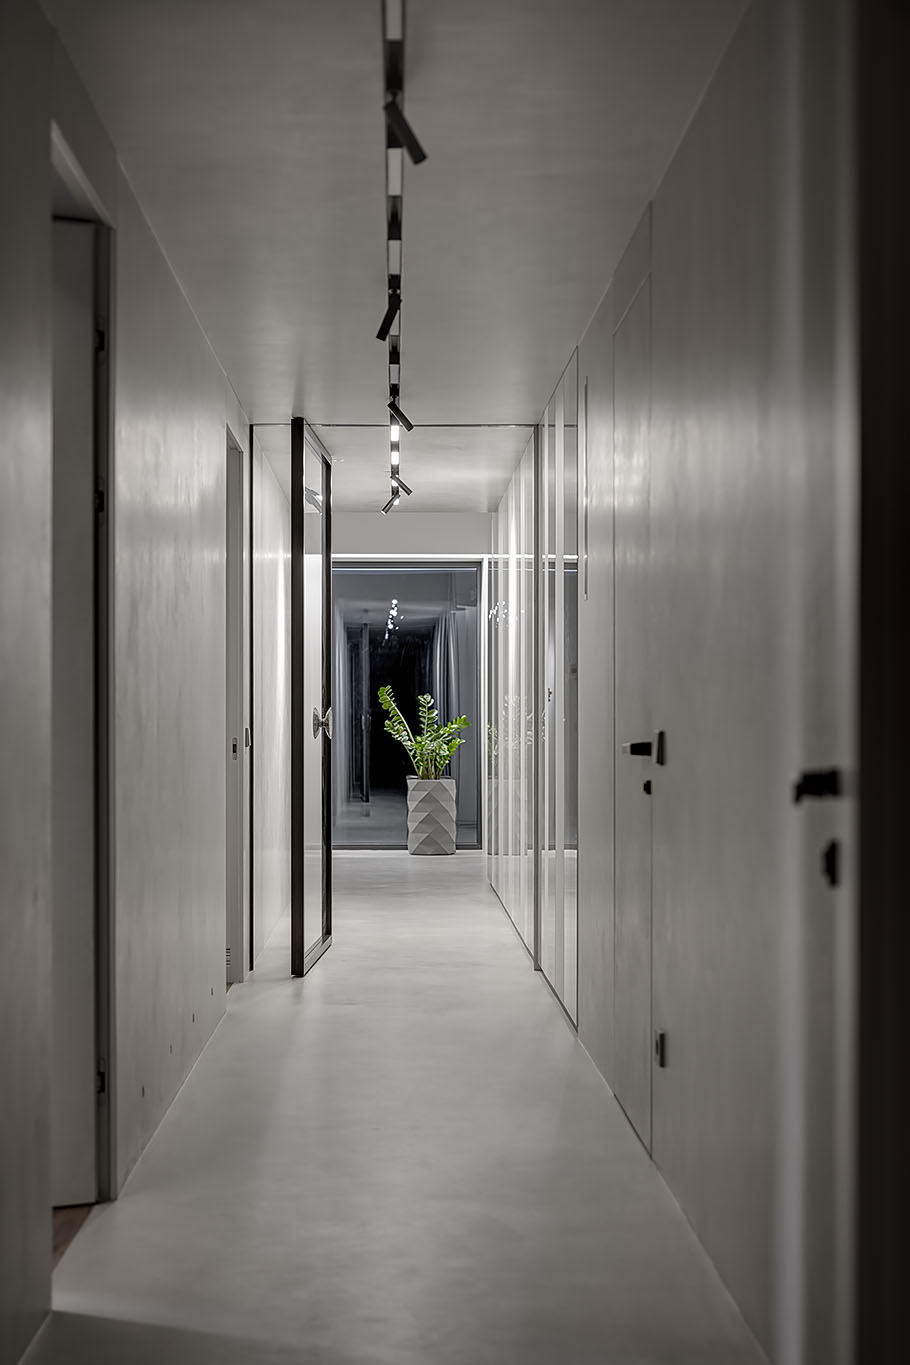 Appartamento con microcemento su pavimento, pareti e soffitto del corridoio.